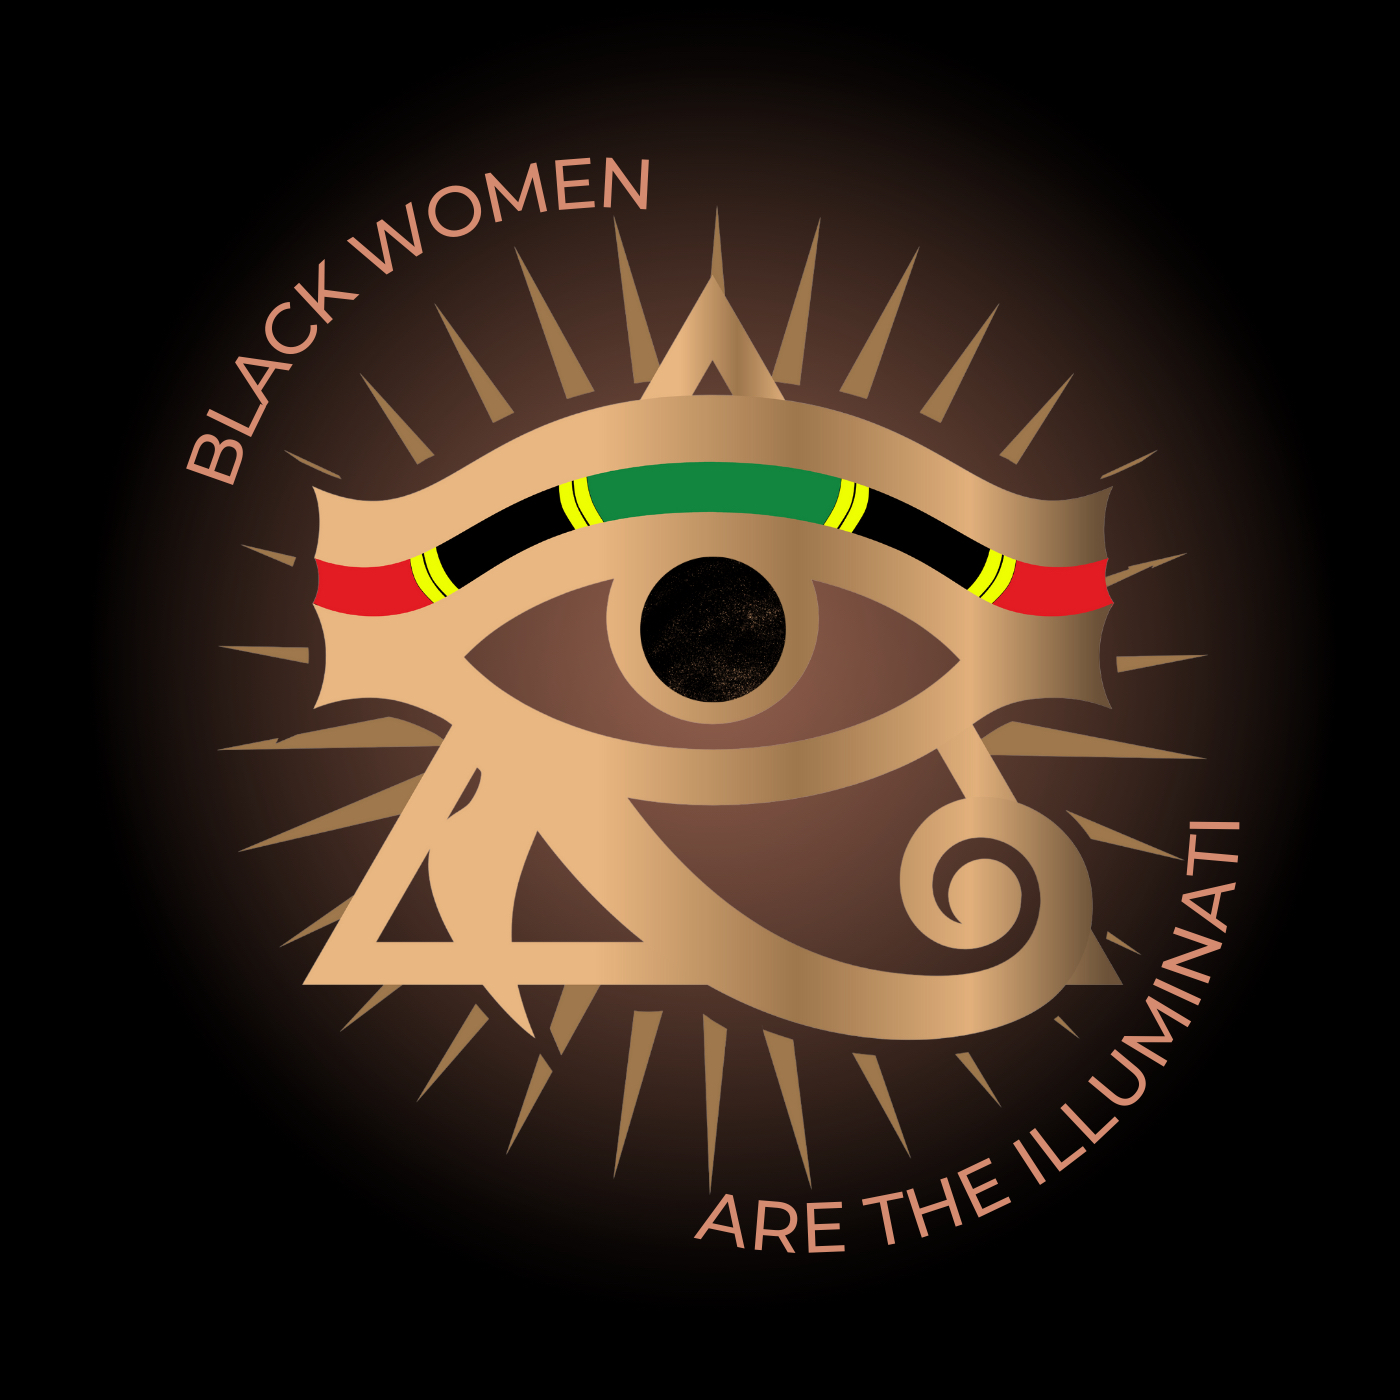 Black Women Are the Illuminati Podcast